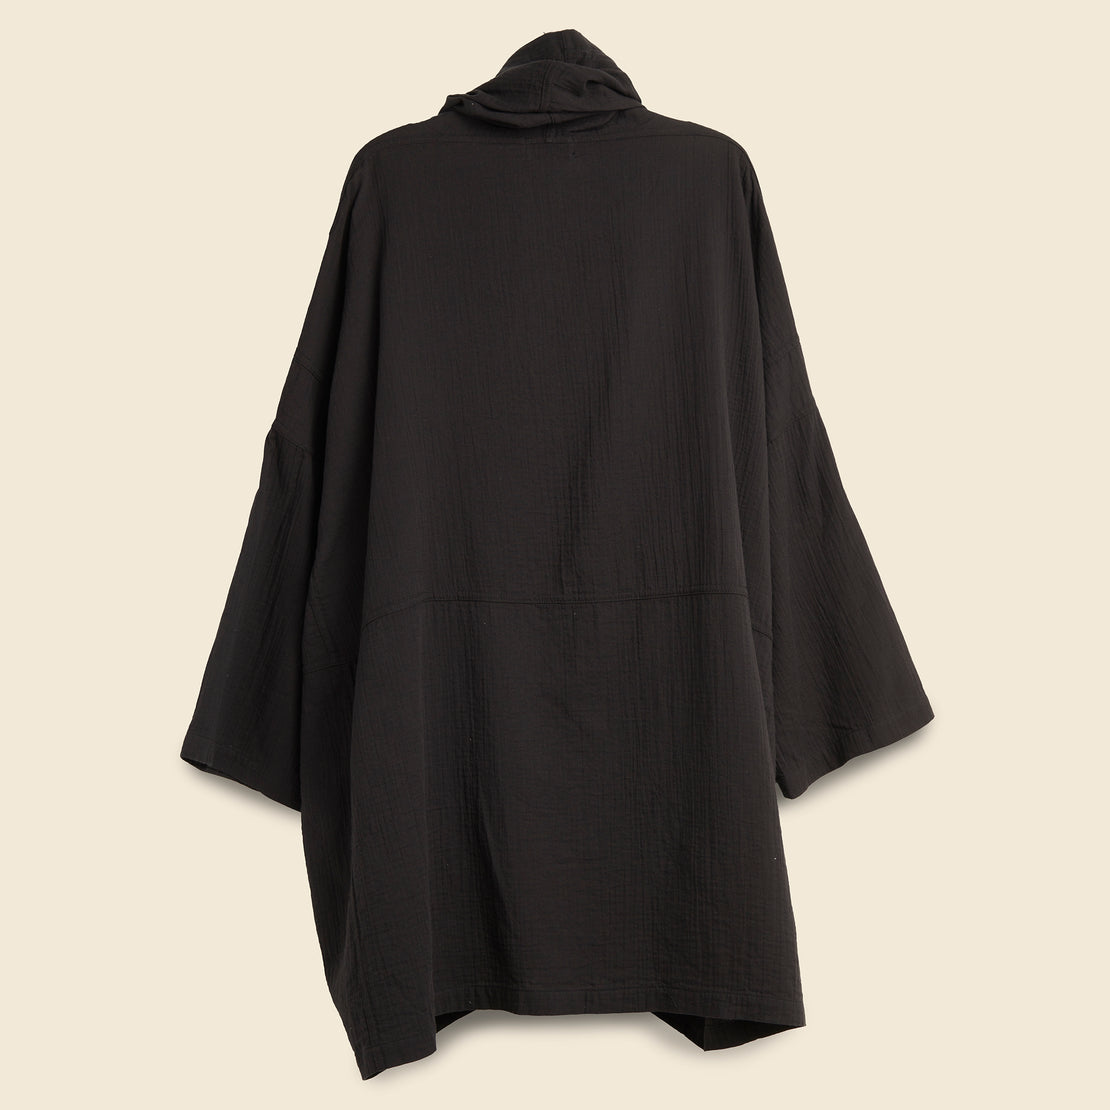 Haori Coat - Black - Atelier Delphine - STAG Provisions - W - Tops - Kimono